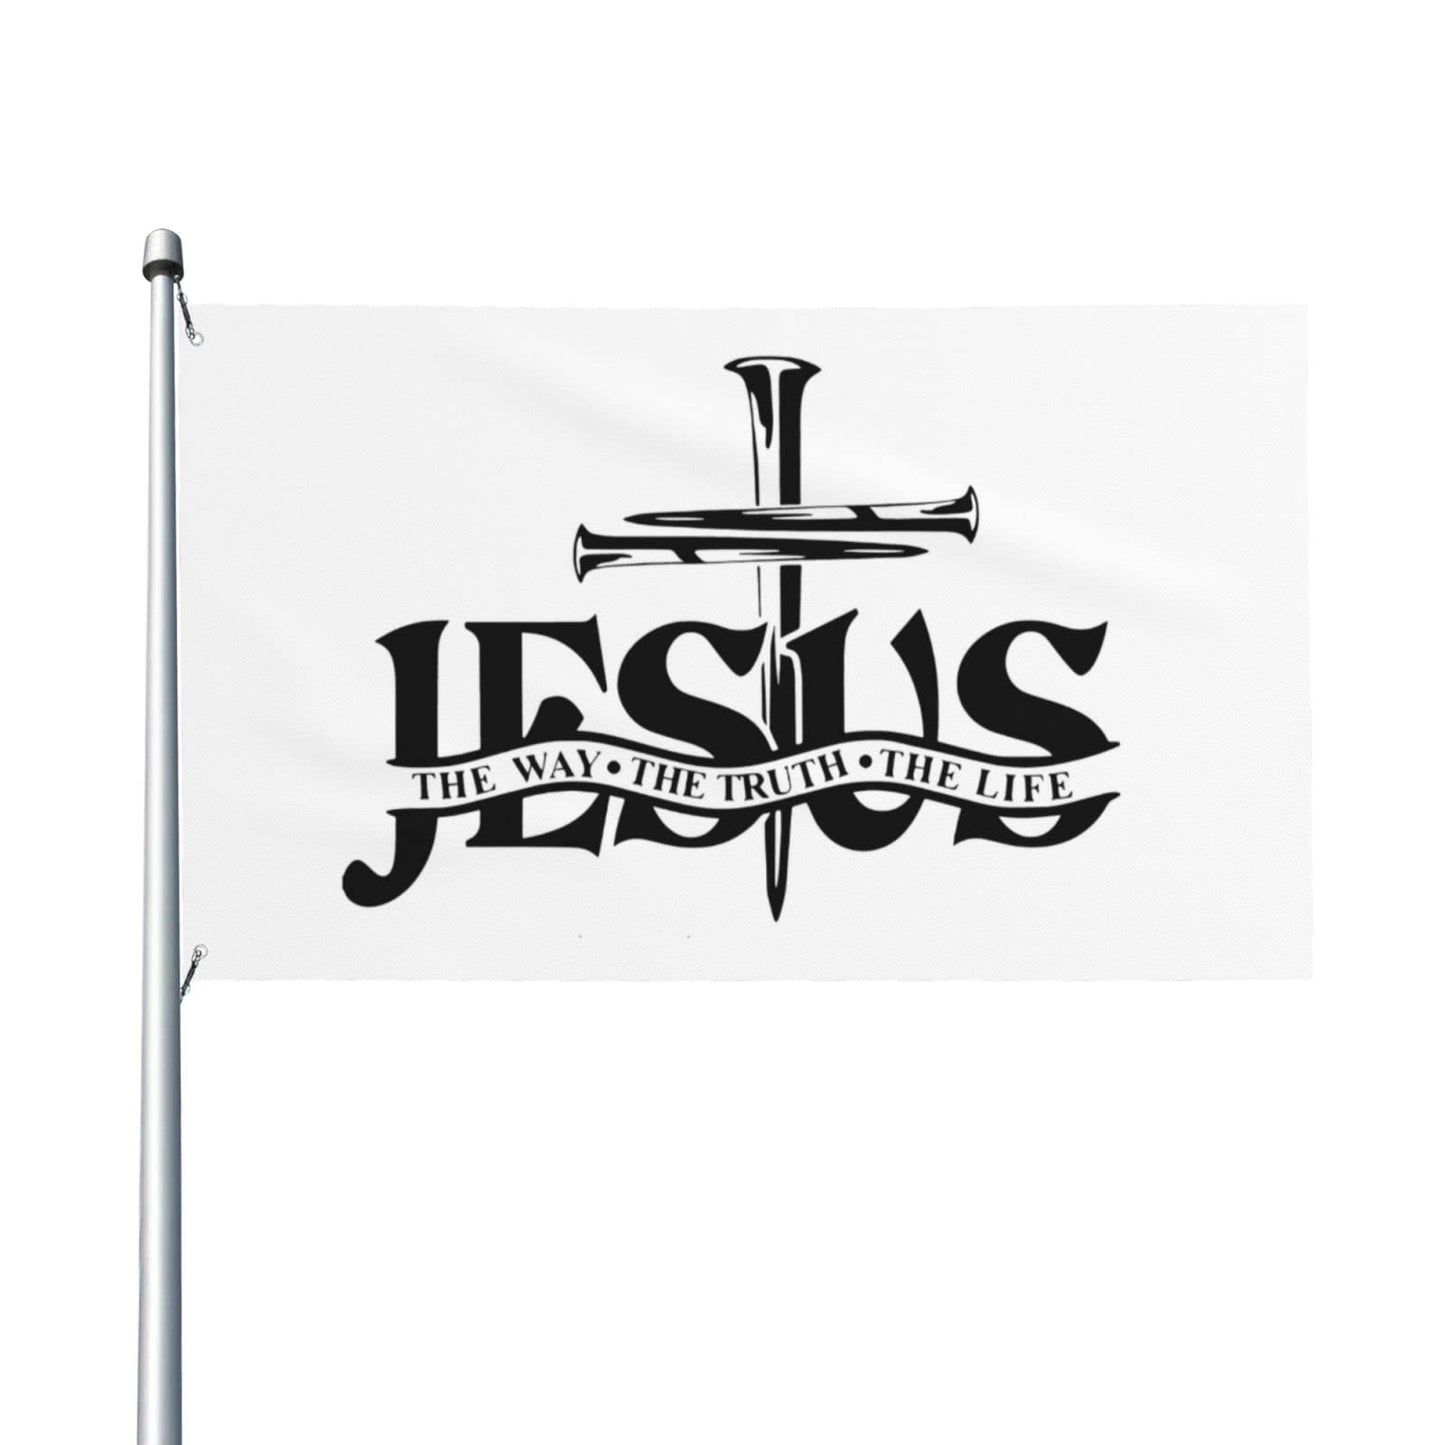 Christianartbag Flag Decor, Jesus Christ He is Risen Christian and Flags Brass Grommets Women Men Gift - Christian Art Bag